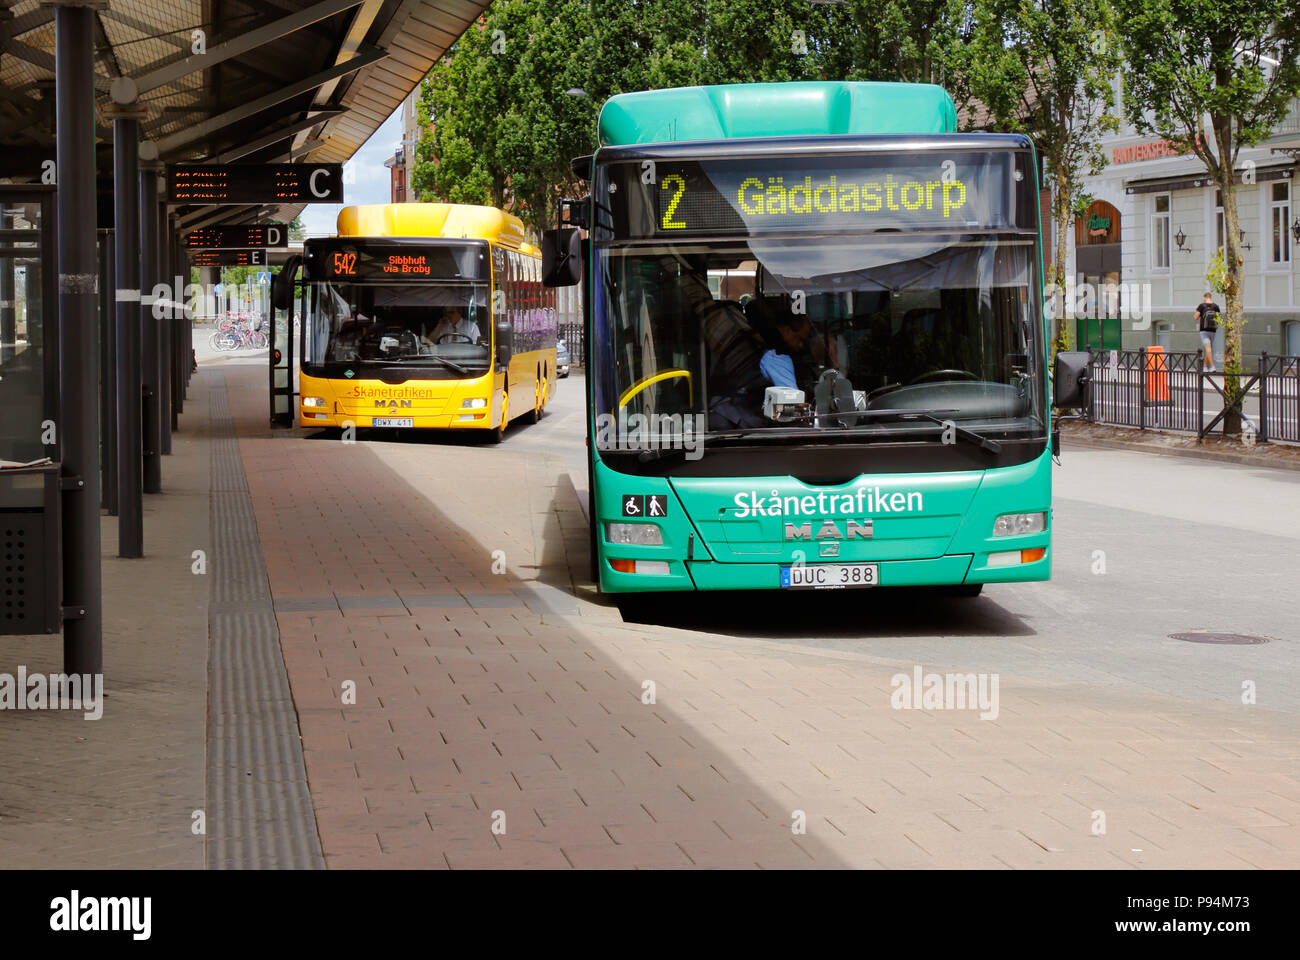 Hassleholm, Schweden - 26. Juni 2018: Busse in Dienstleistungen für die Skanetrafiken öffentliche Verkehrsmittel außerhalb des Bahnhofs. Stockfoto